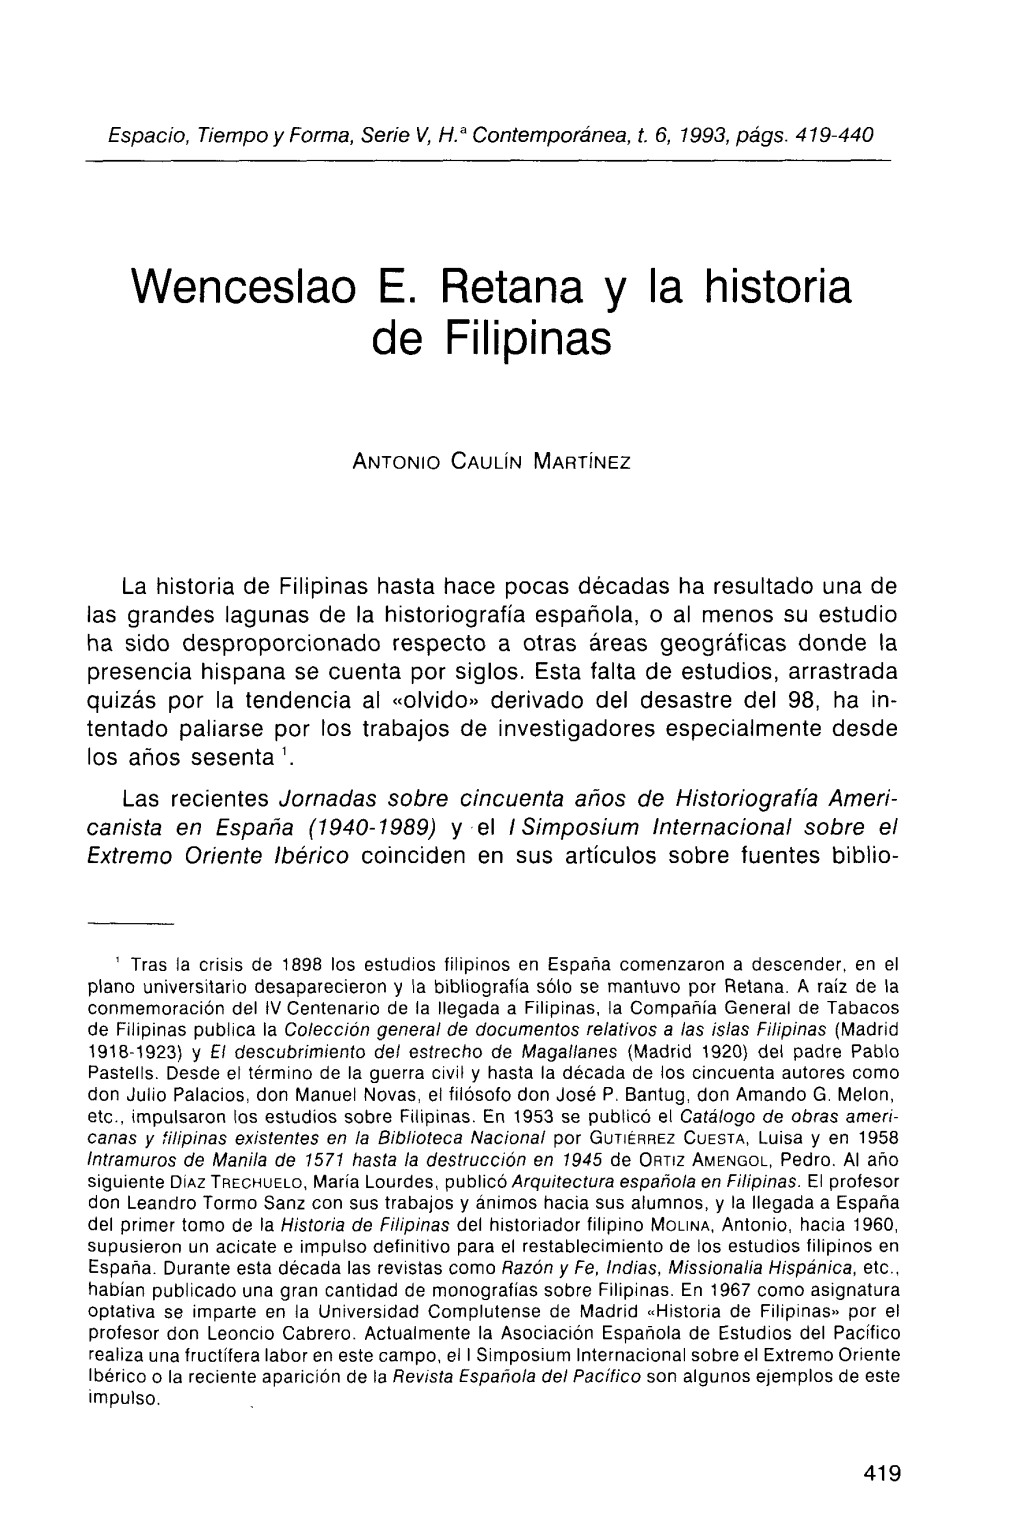 Wenceslao E. Retana Y La Historia De Filipinas Responsabilidad De Gran Entidad